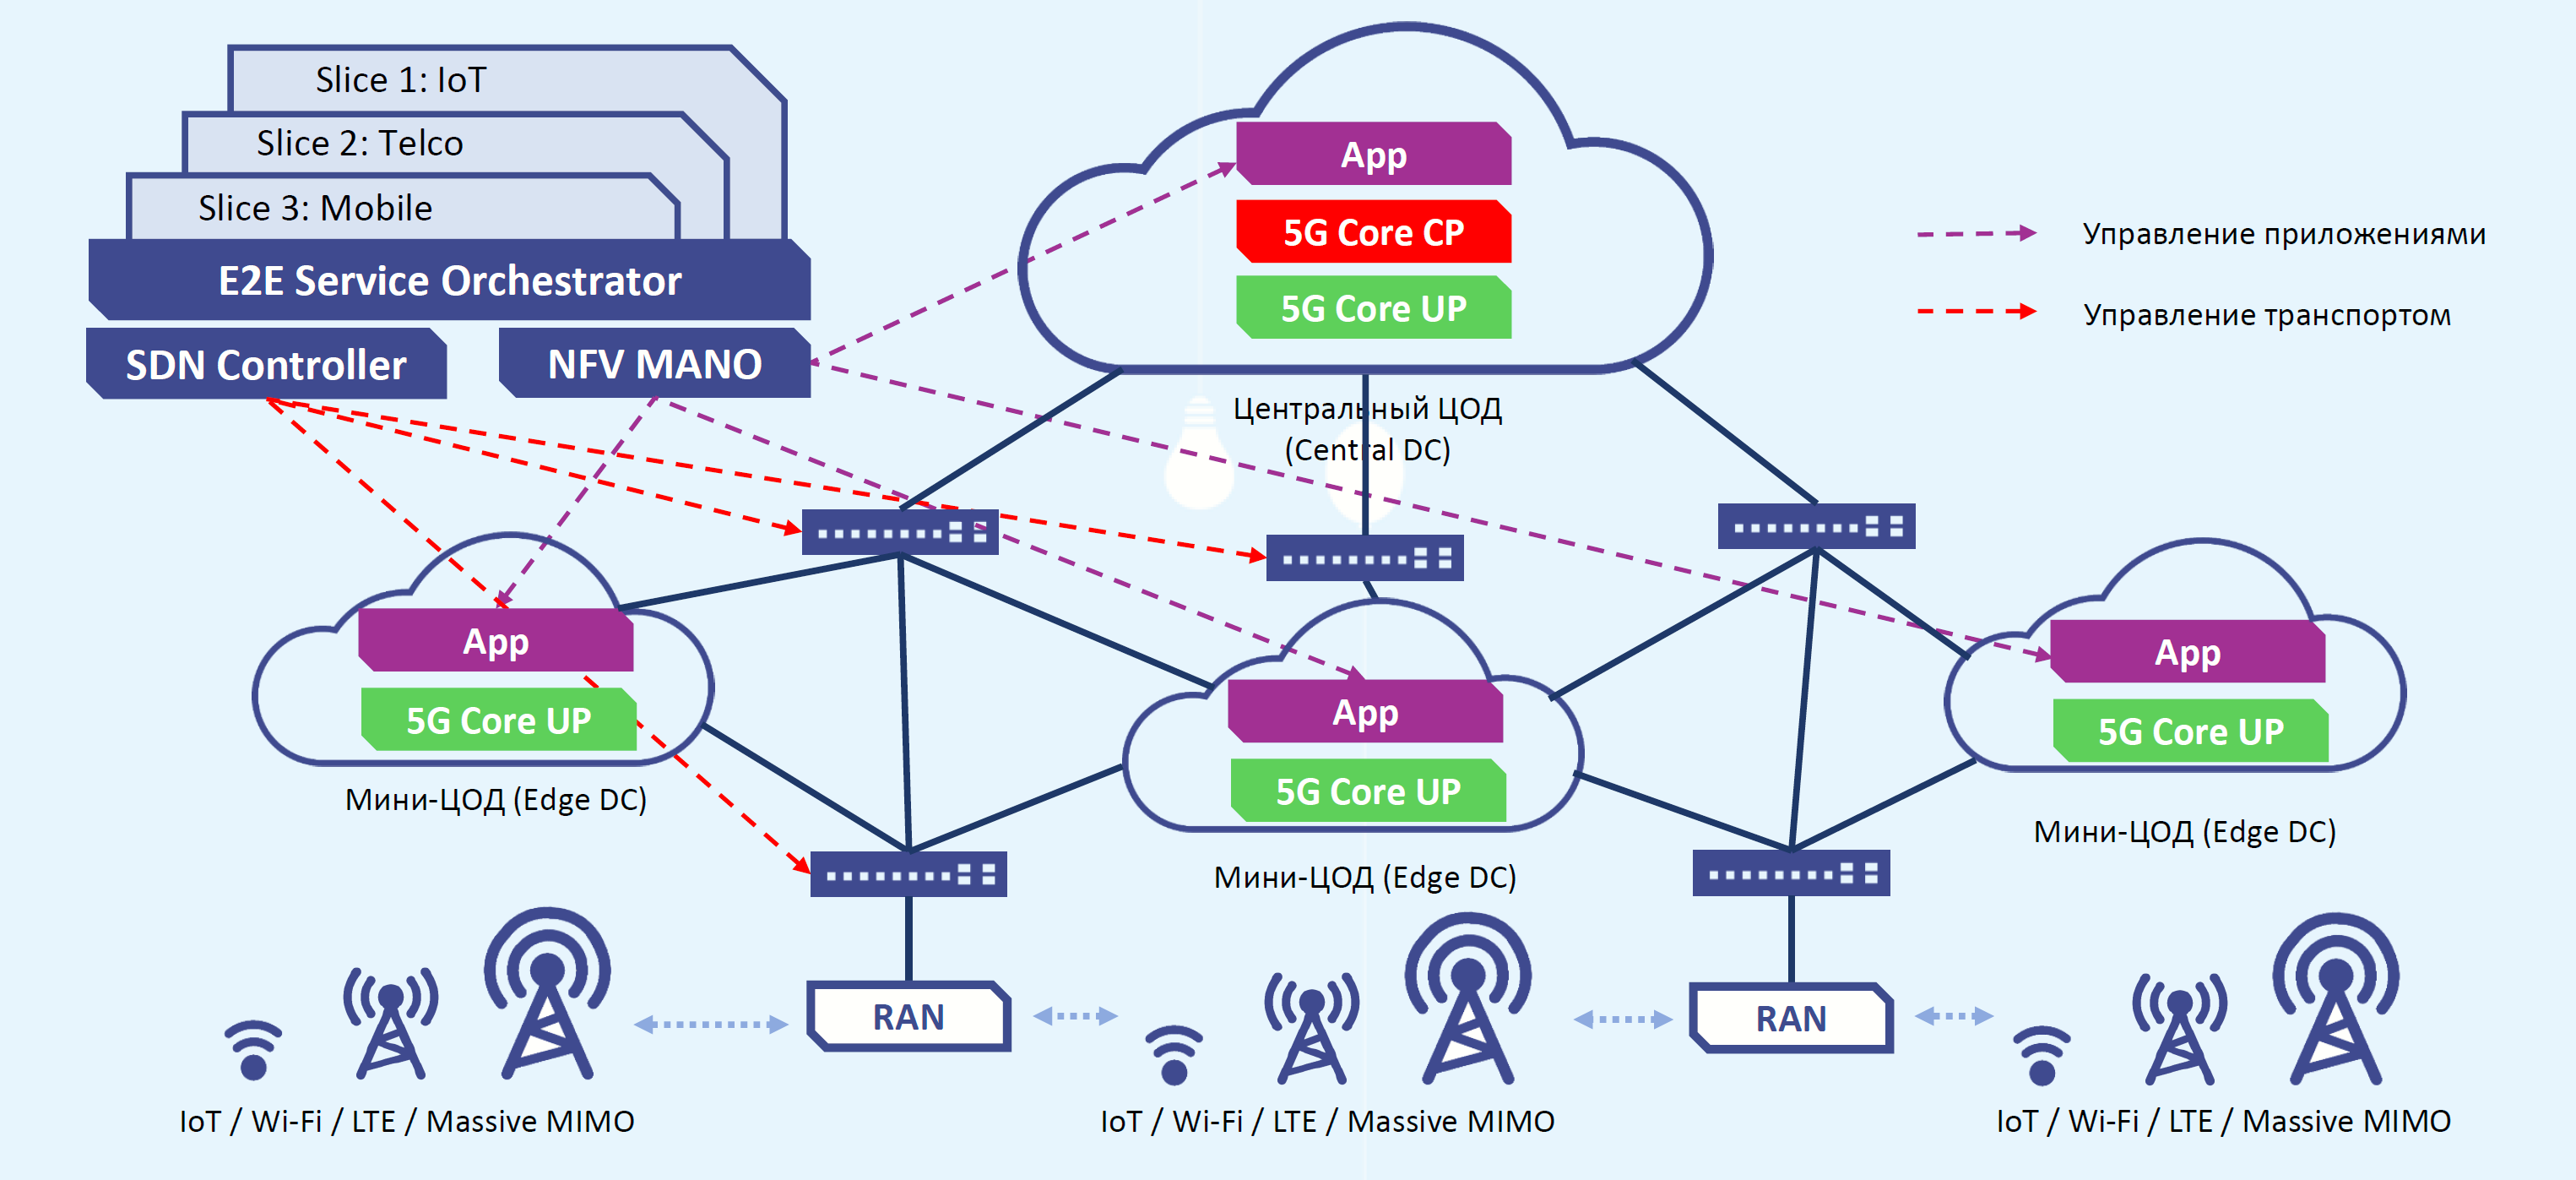 Технология 4g. Схема сети 5g. Архитектура сети 5g. 5g сотовый связи структура. Архитектура сети 5g NSA.